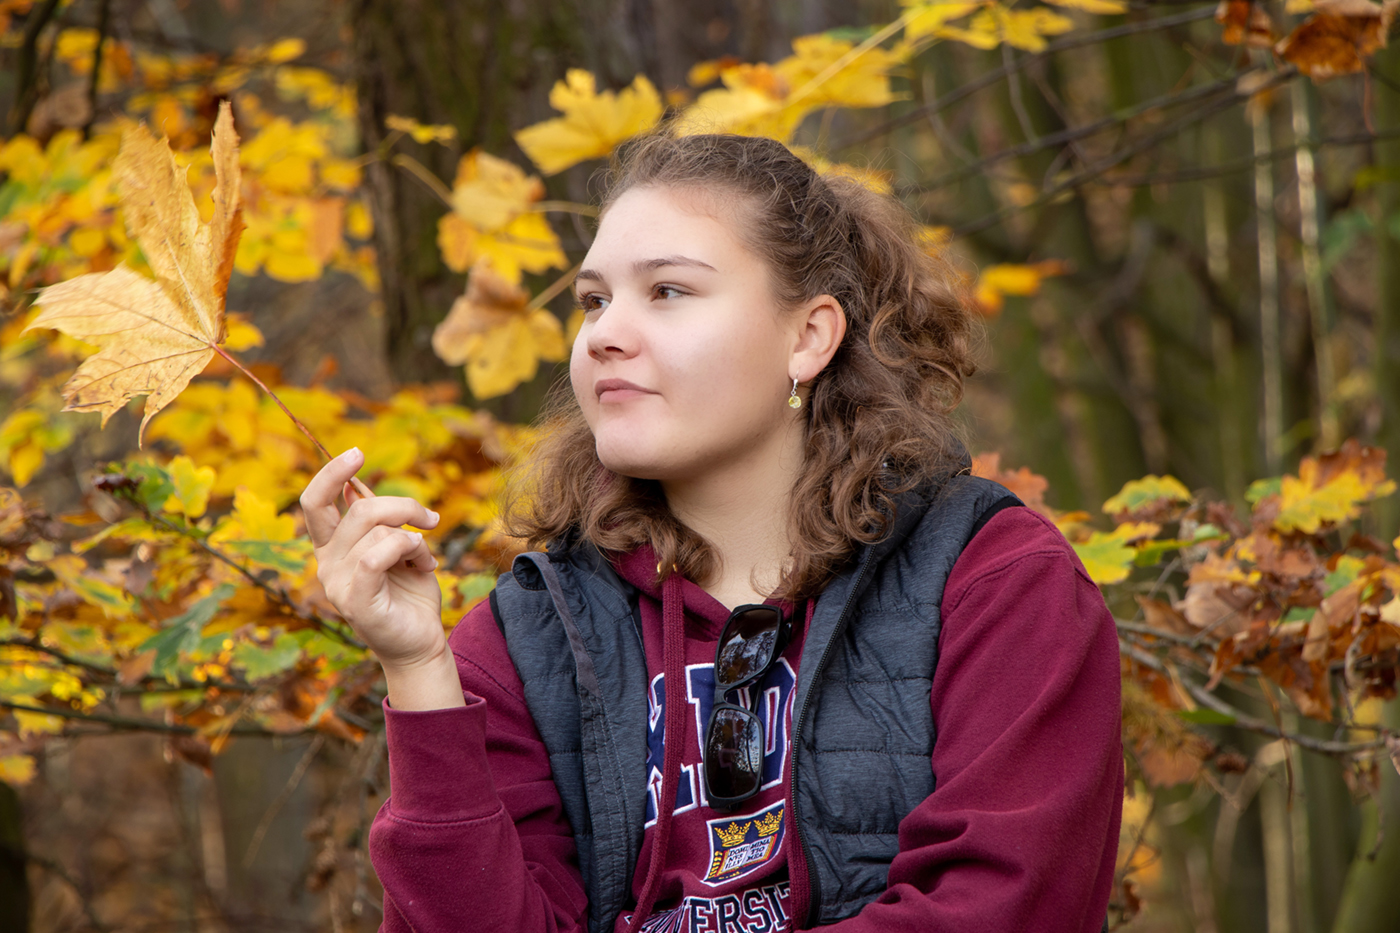 Dcera přemýšlející  nad listím